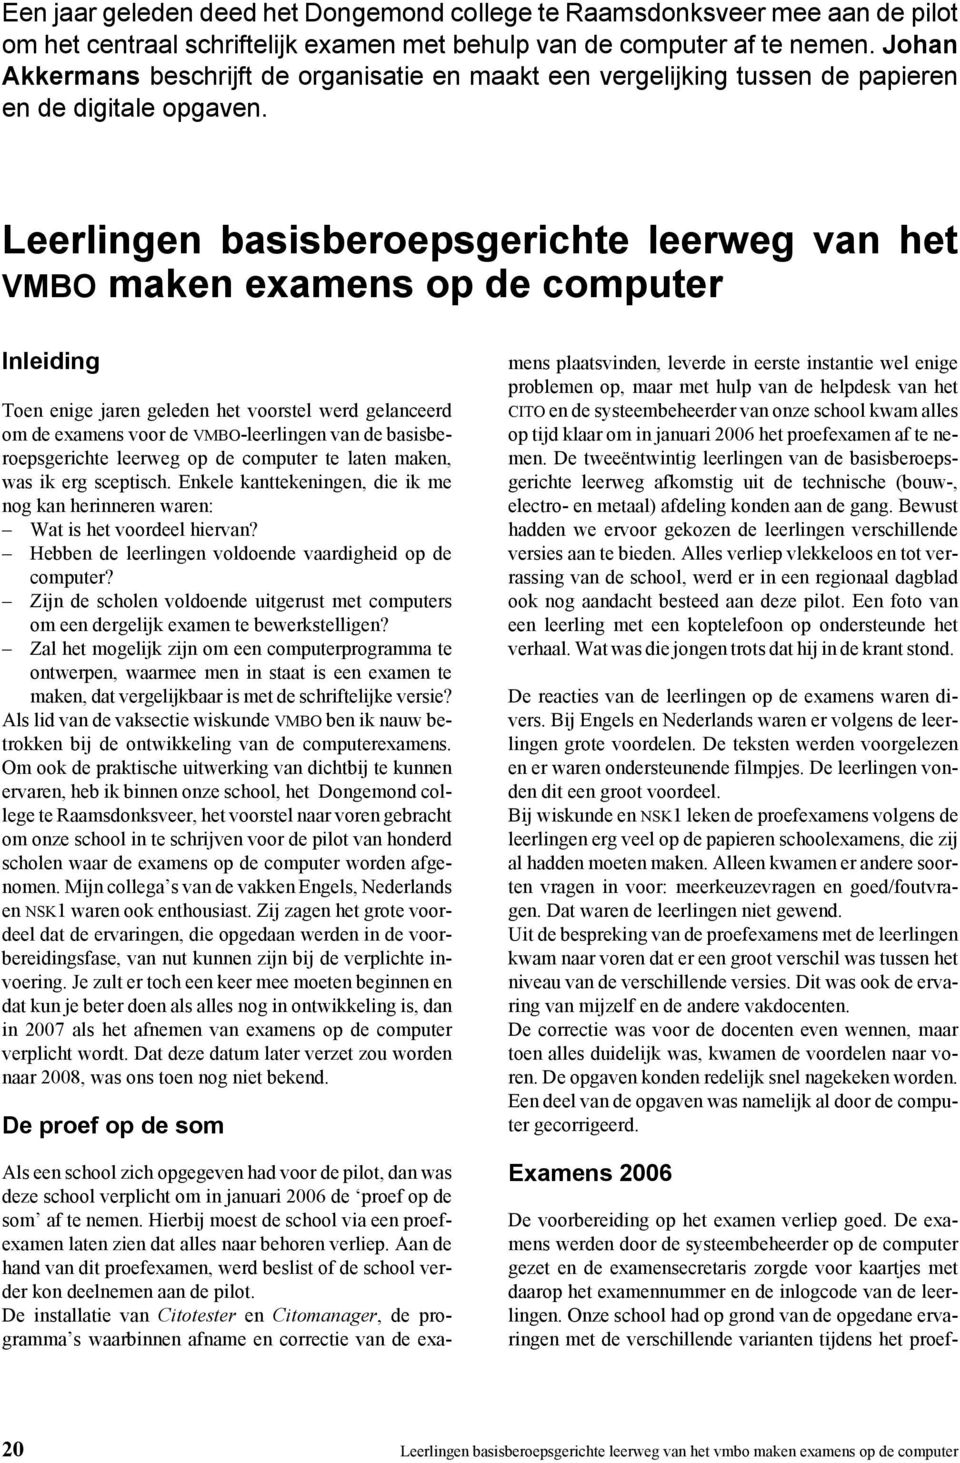 Leerlingen basisberoepsgerichte leerweg van het VMBO maken examens op de computer Inleiding Toen enige jaren geleden het voorstel werd gelanceerd om de examens voor de VMBO-leerlingen van de